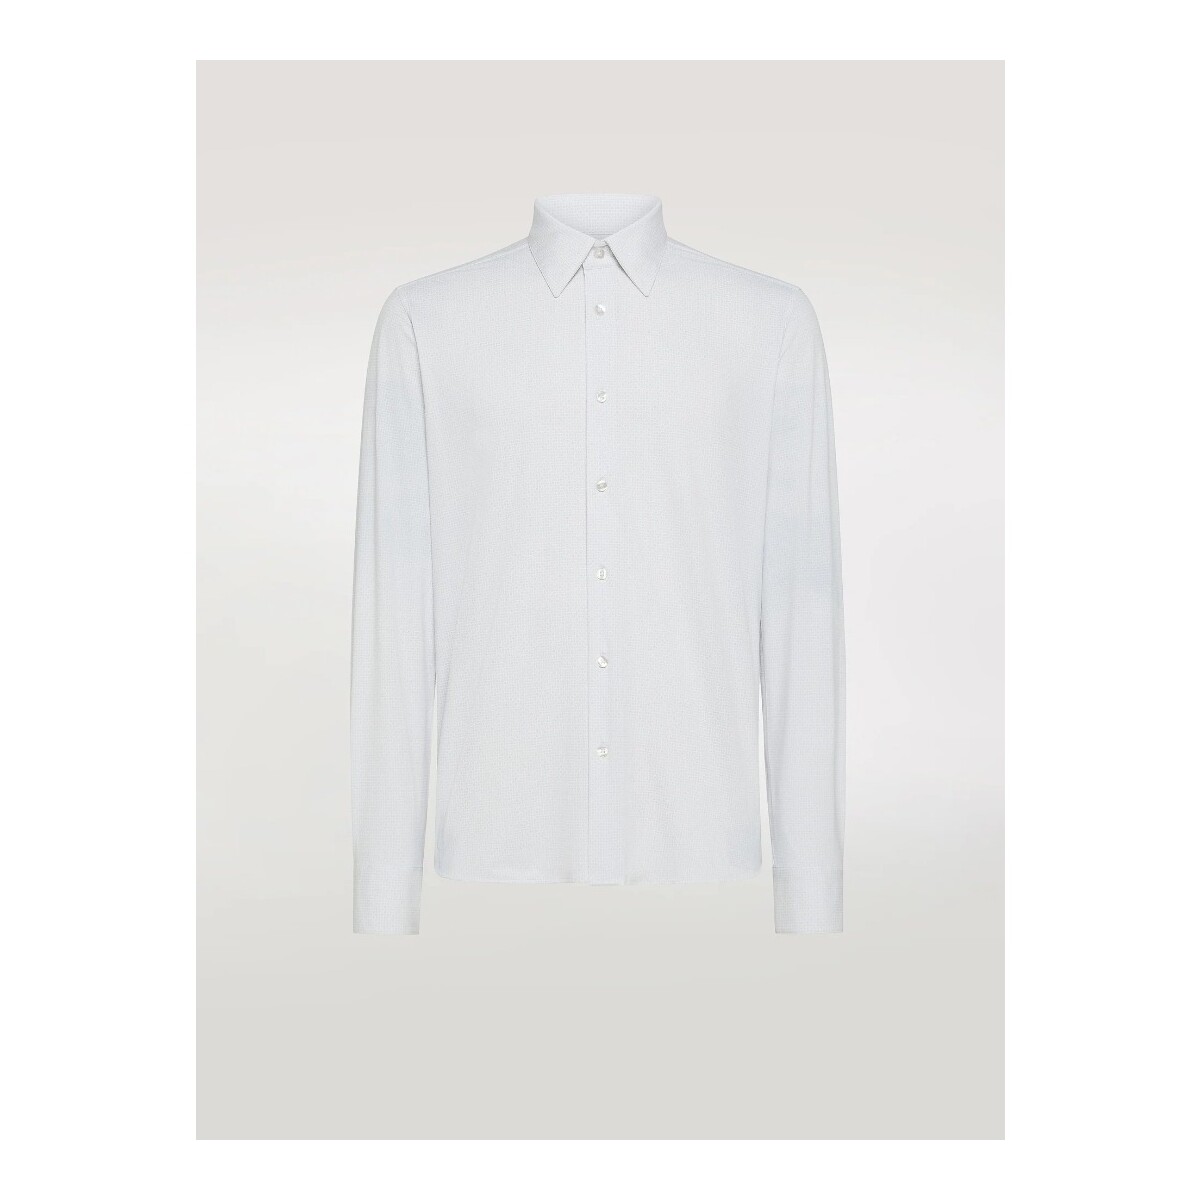 Vêtements Homme Chemises manches longues Rrd - Roberto Ricci Designs S24261 Blanc